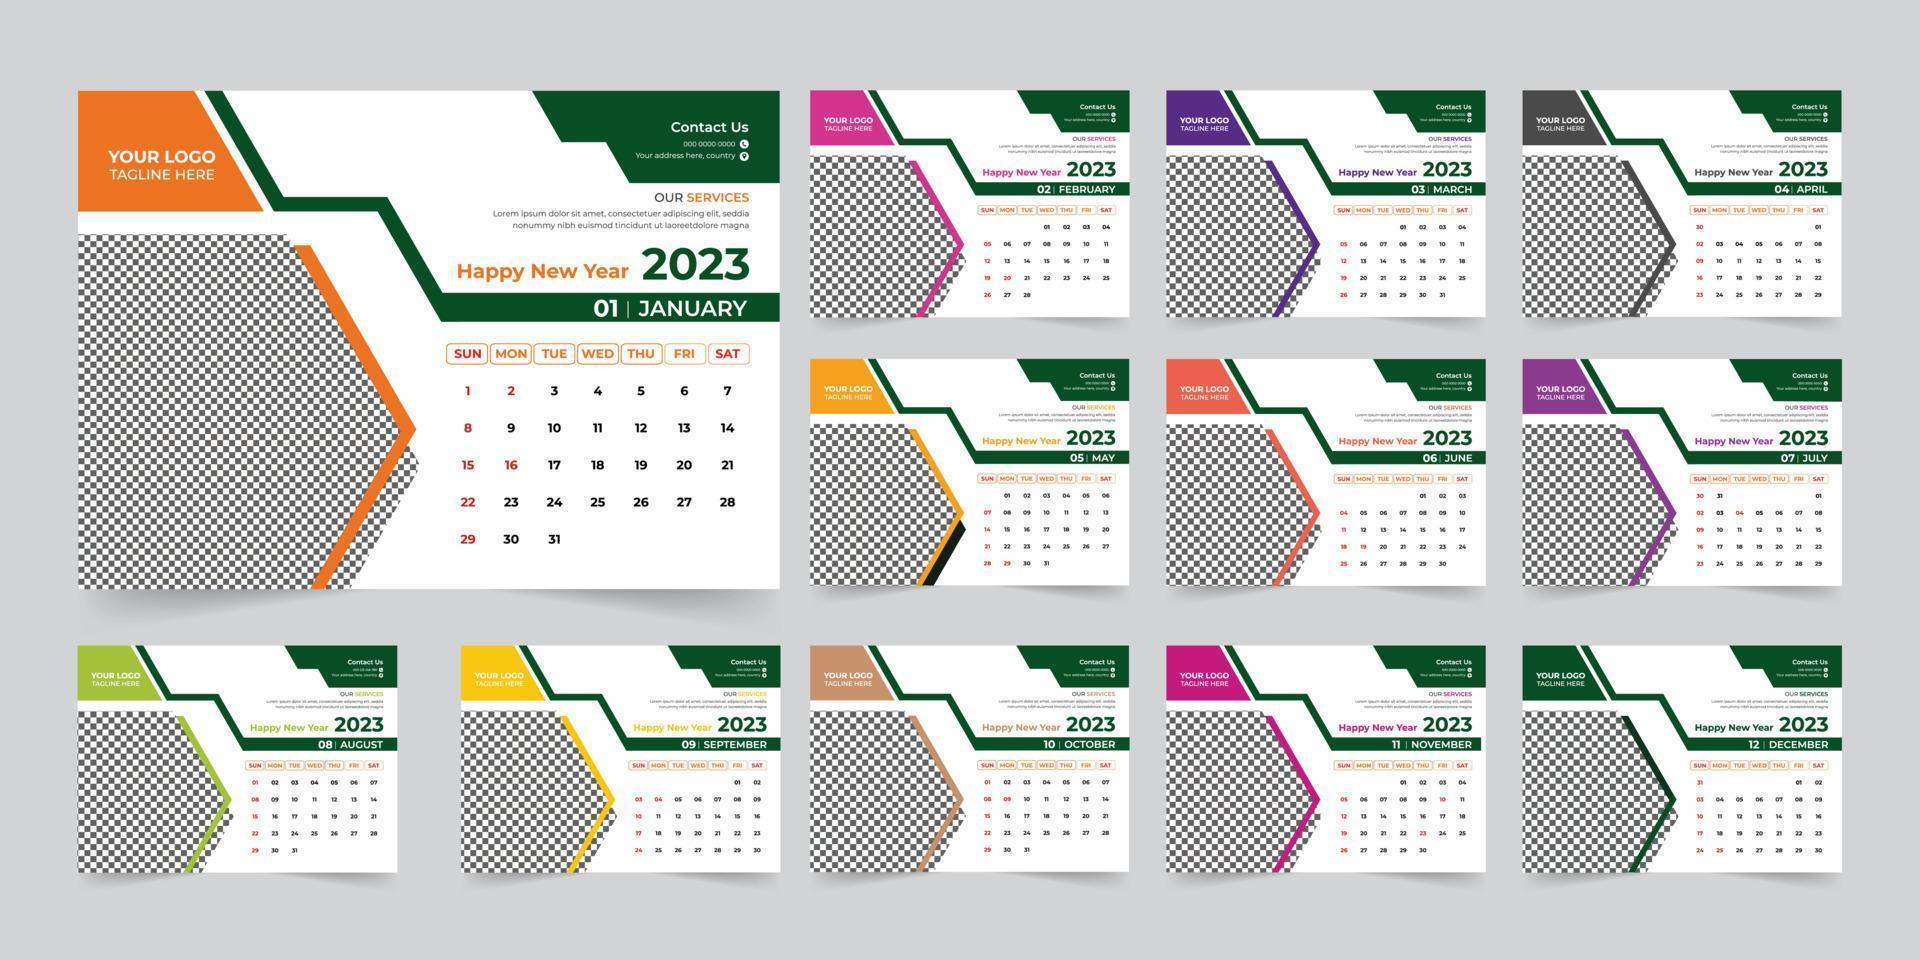 vector de plantilla de diseño de calendario de escritorio de año nuevo moderno 2023, plantilla de diseño de calendario creativo de alta calidad listo para imprimir